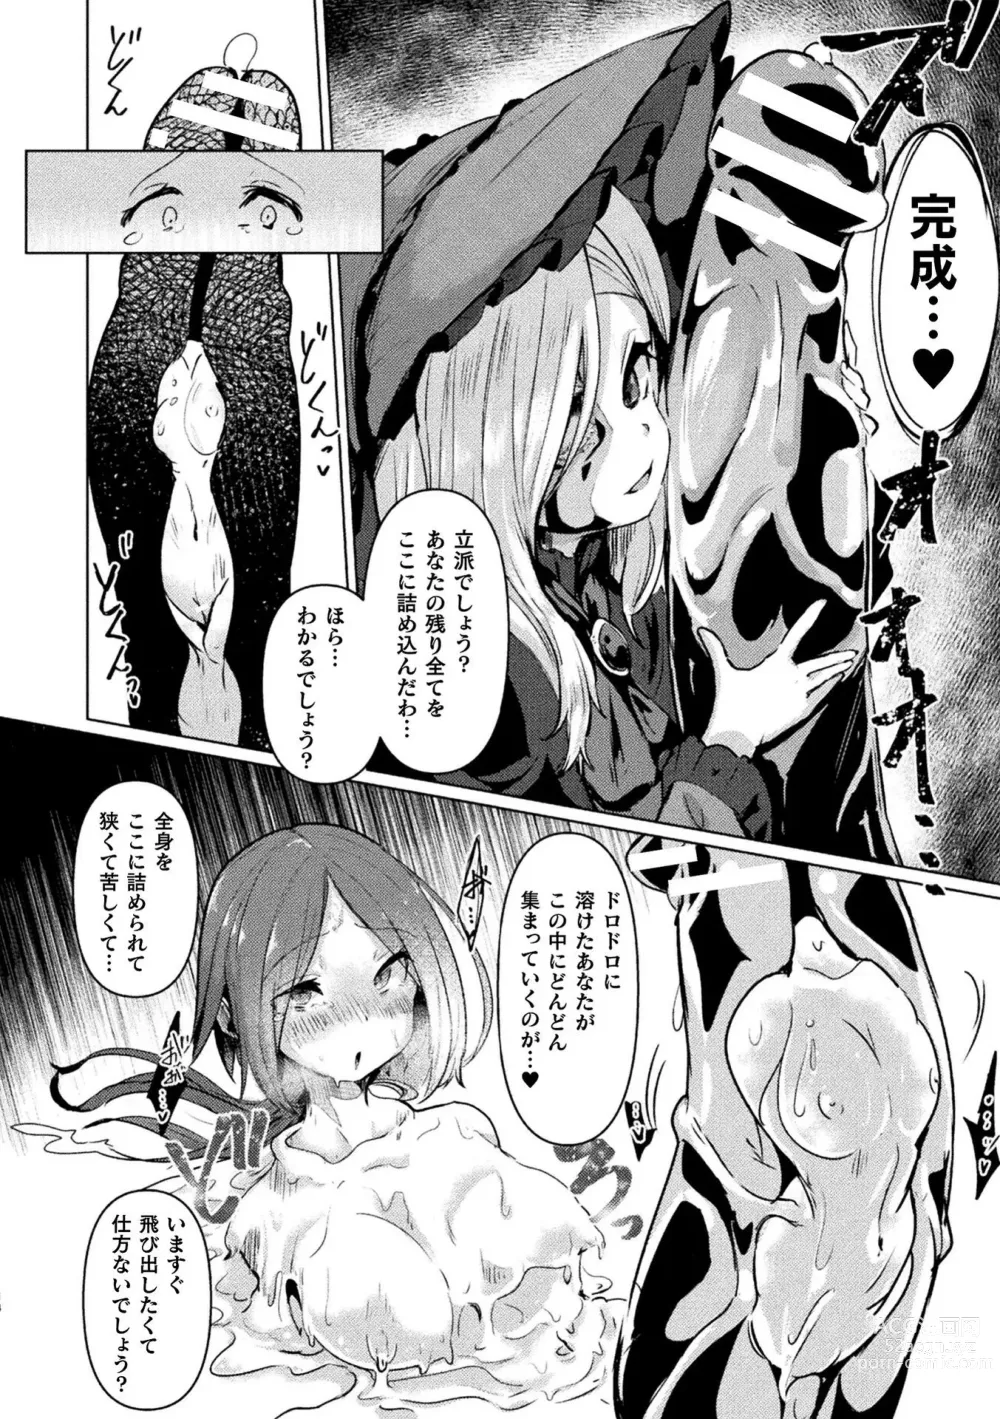 Page 16 of manga Bessatsu Comic Unreal Joutai Henka & Nikutai Kaizou Hen Vol. 2